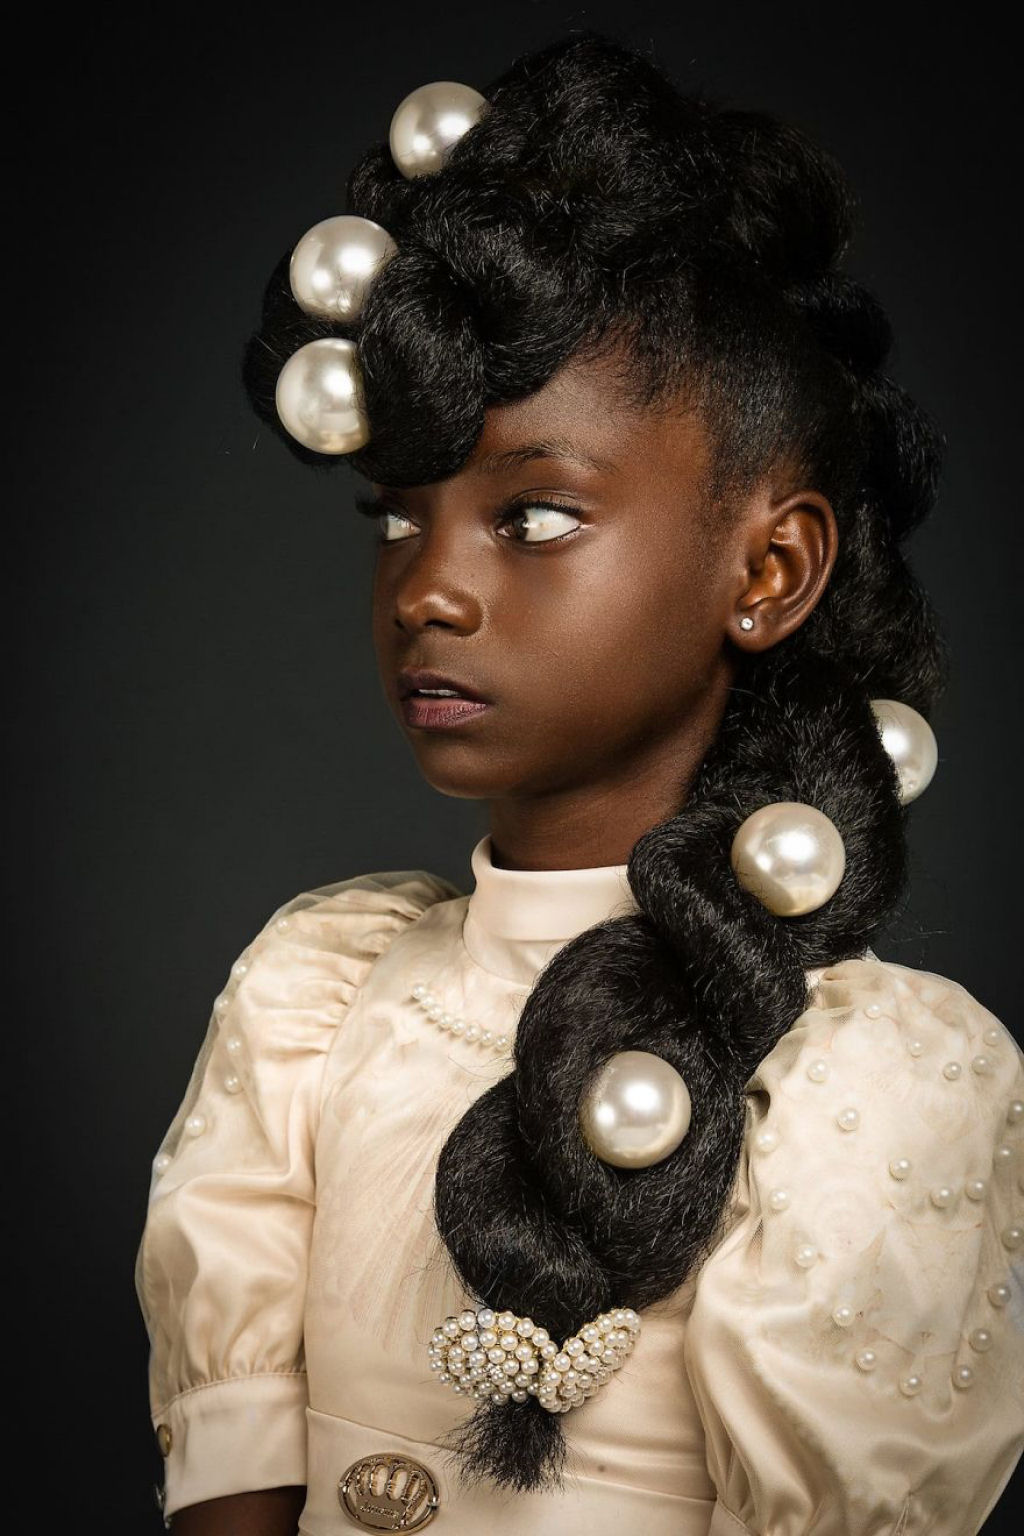 Retratos inspirados destacam a beleza do cabelo crespo para que outras garotas parem de escond-lo 04